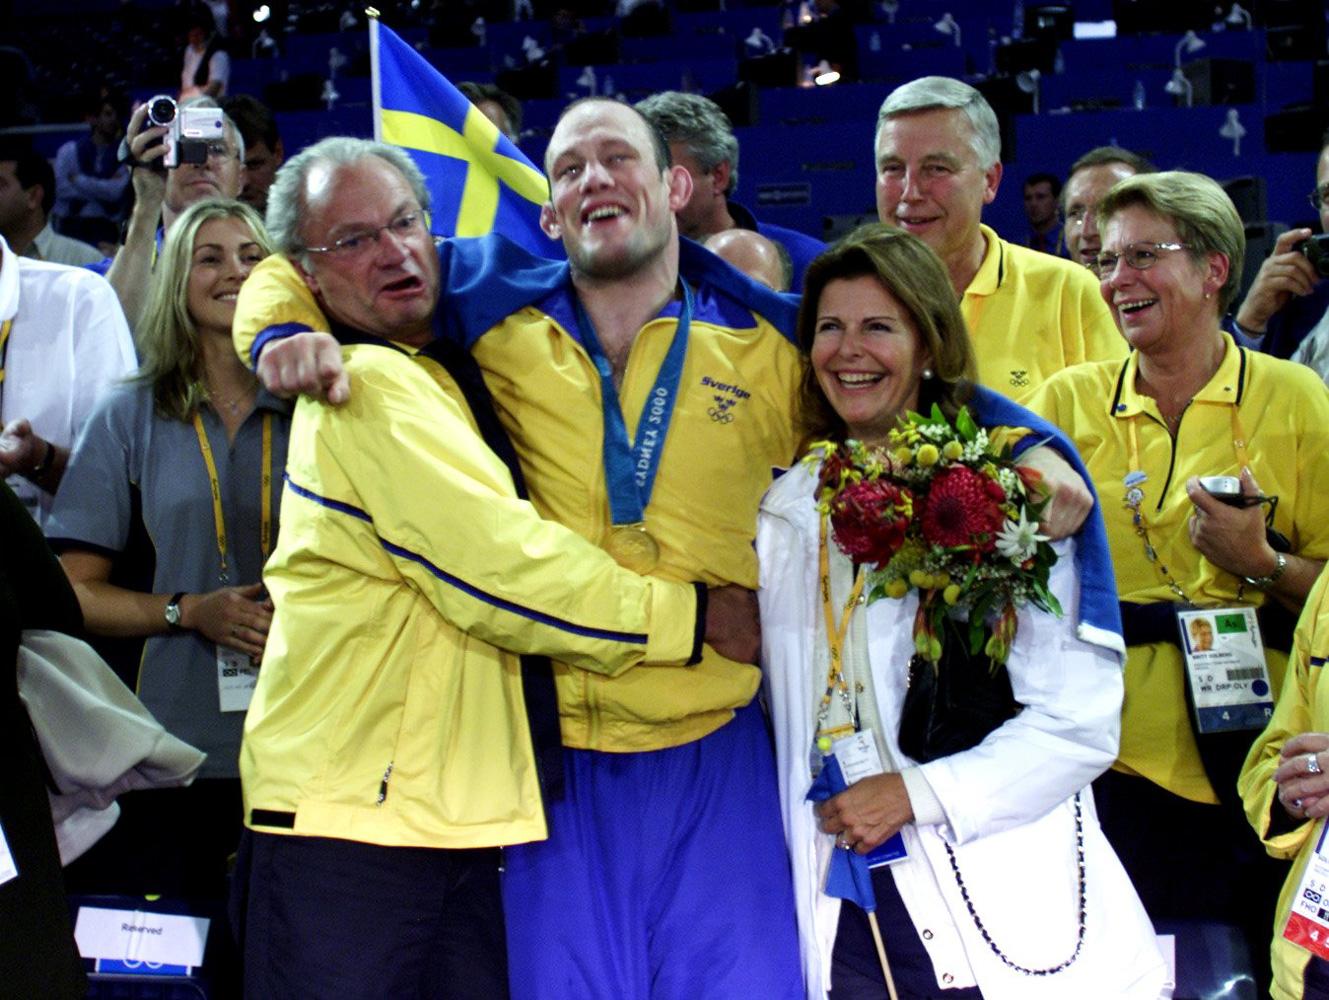 MIKAEL LJUNGBERG, DÖD En av Sveriges bästa brottare genom tiderna. Vann två VM-guld och två OS-medaljer, varav guldet i Sydnet 2000 var karriärens absoluta höjdpunkt. Tog tragiskt sitt liv 2004 efter att ha behandlats för depression en längre tid.